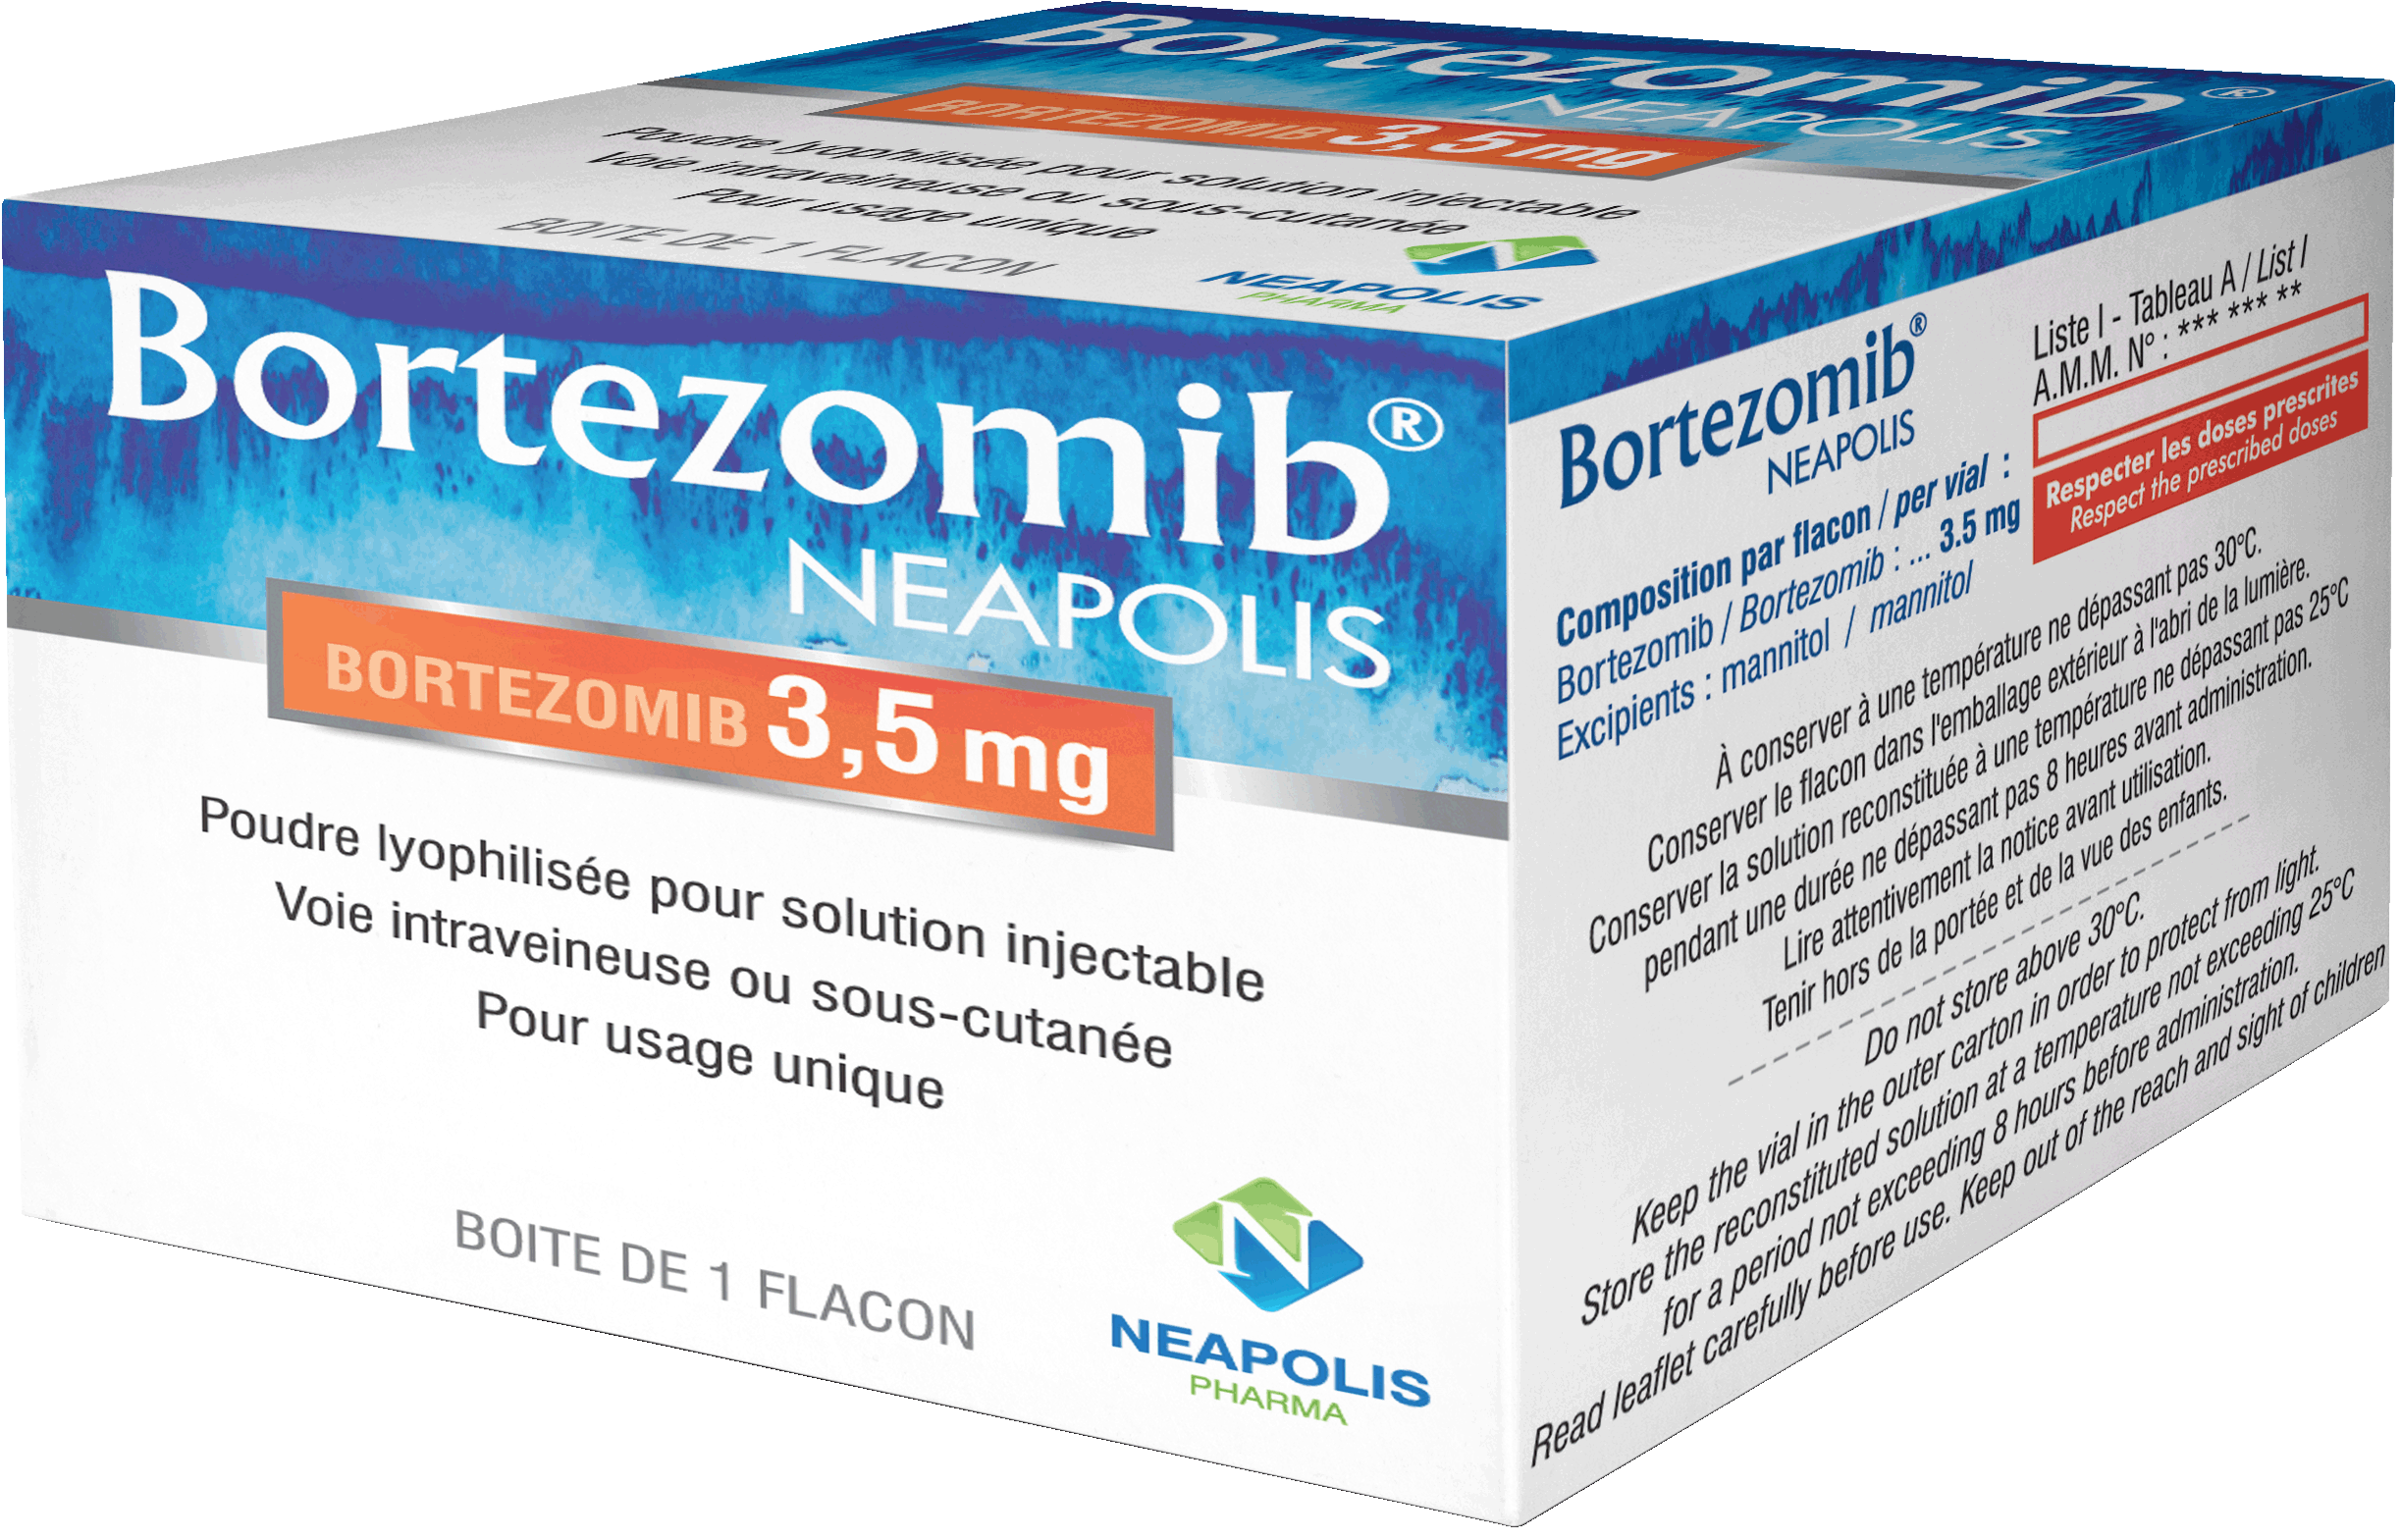 BORTESOMIB NEAPOLIS (bortezomib)